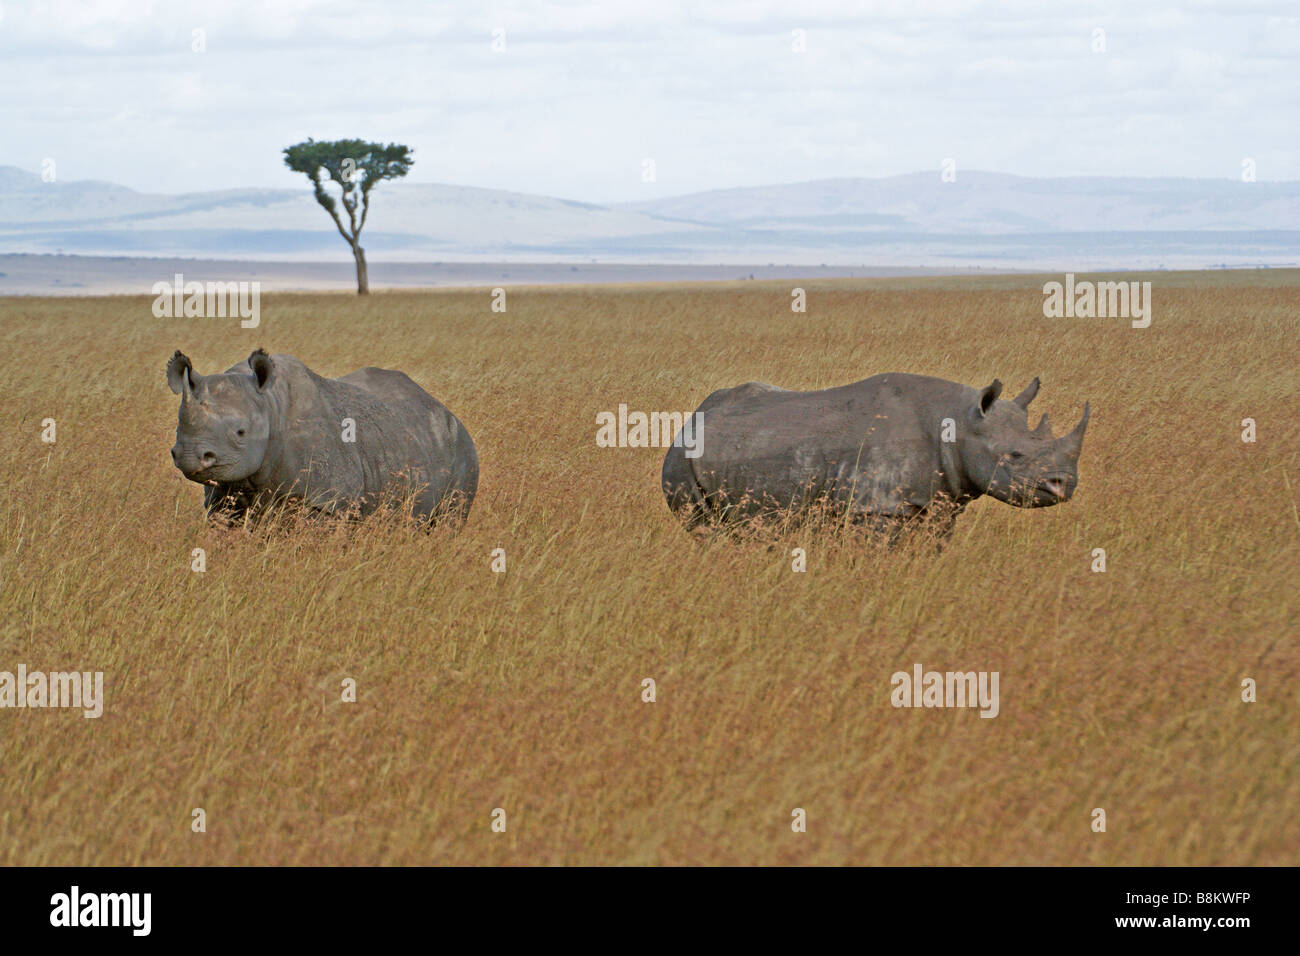 Rinoceronte negro con crecido en la pantorrilla, Masai Mara, Kenya Foto de stock